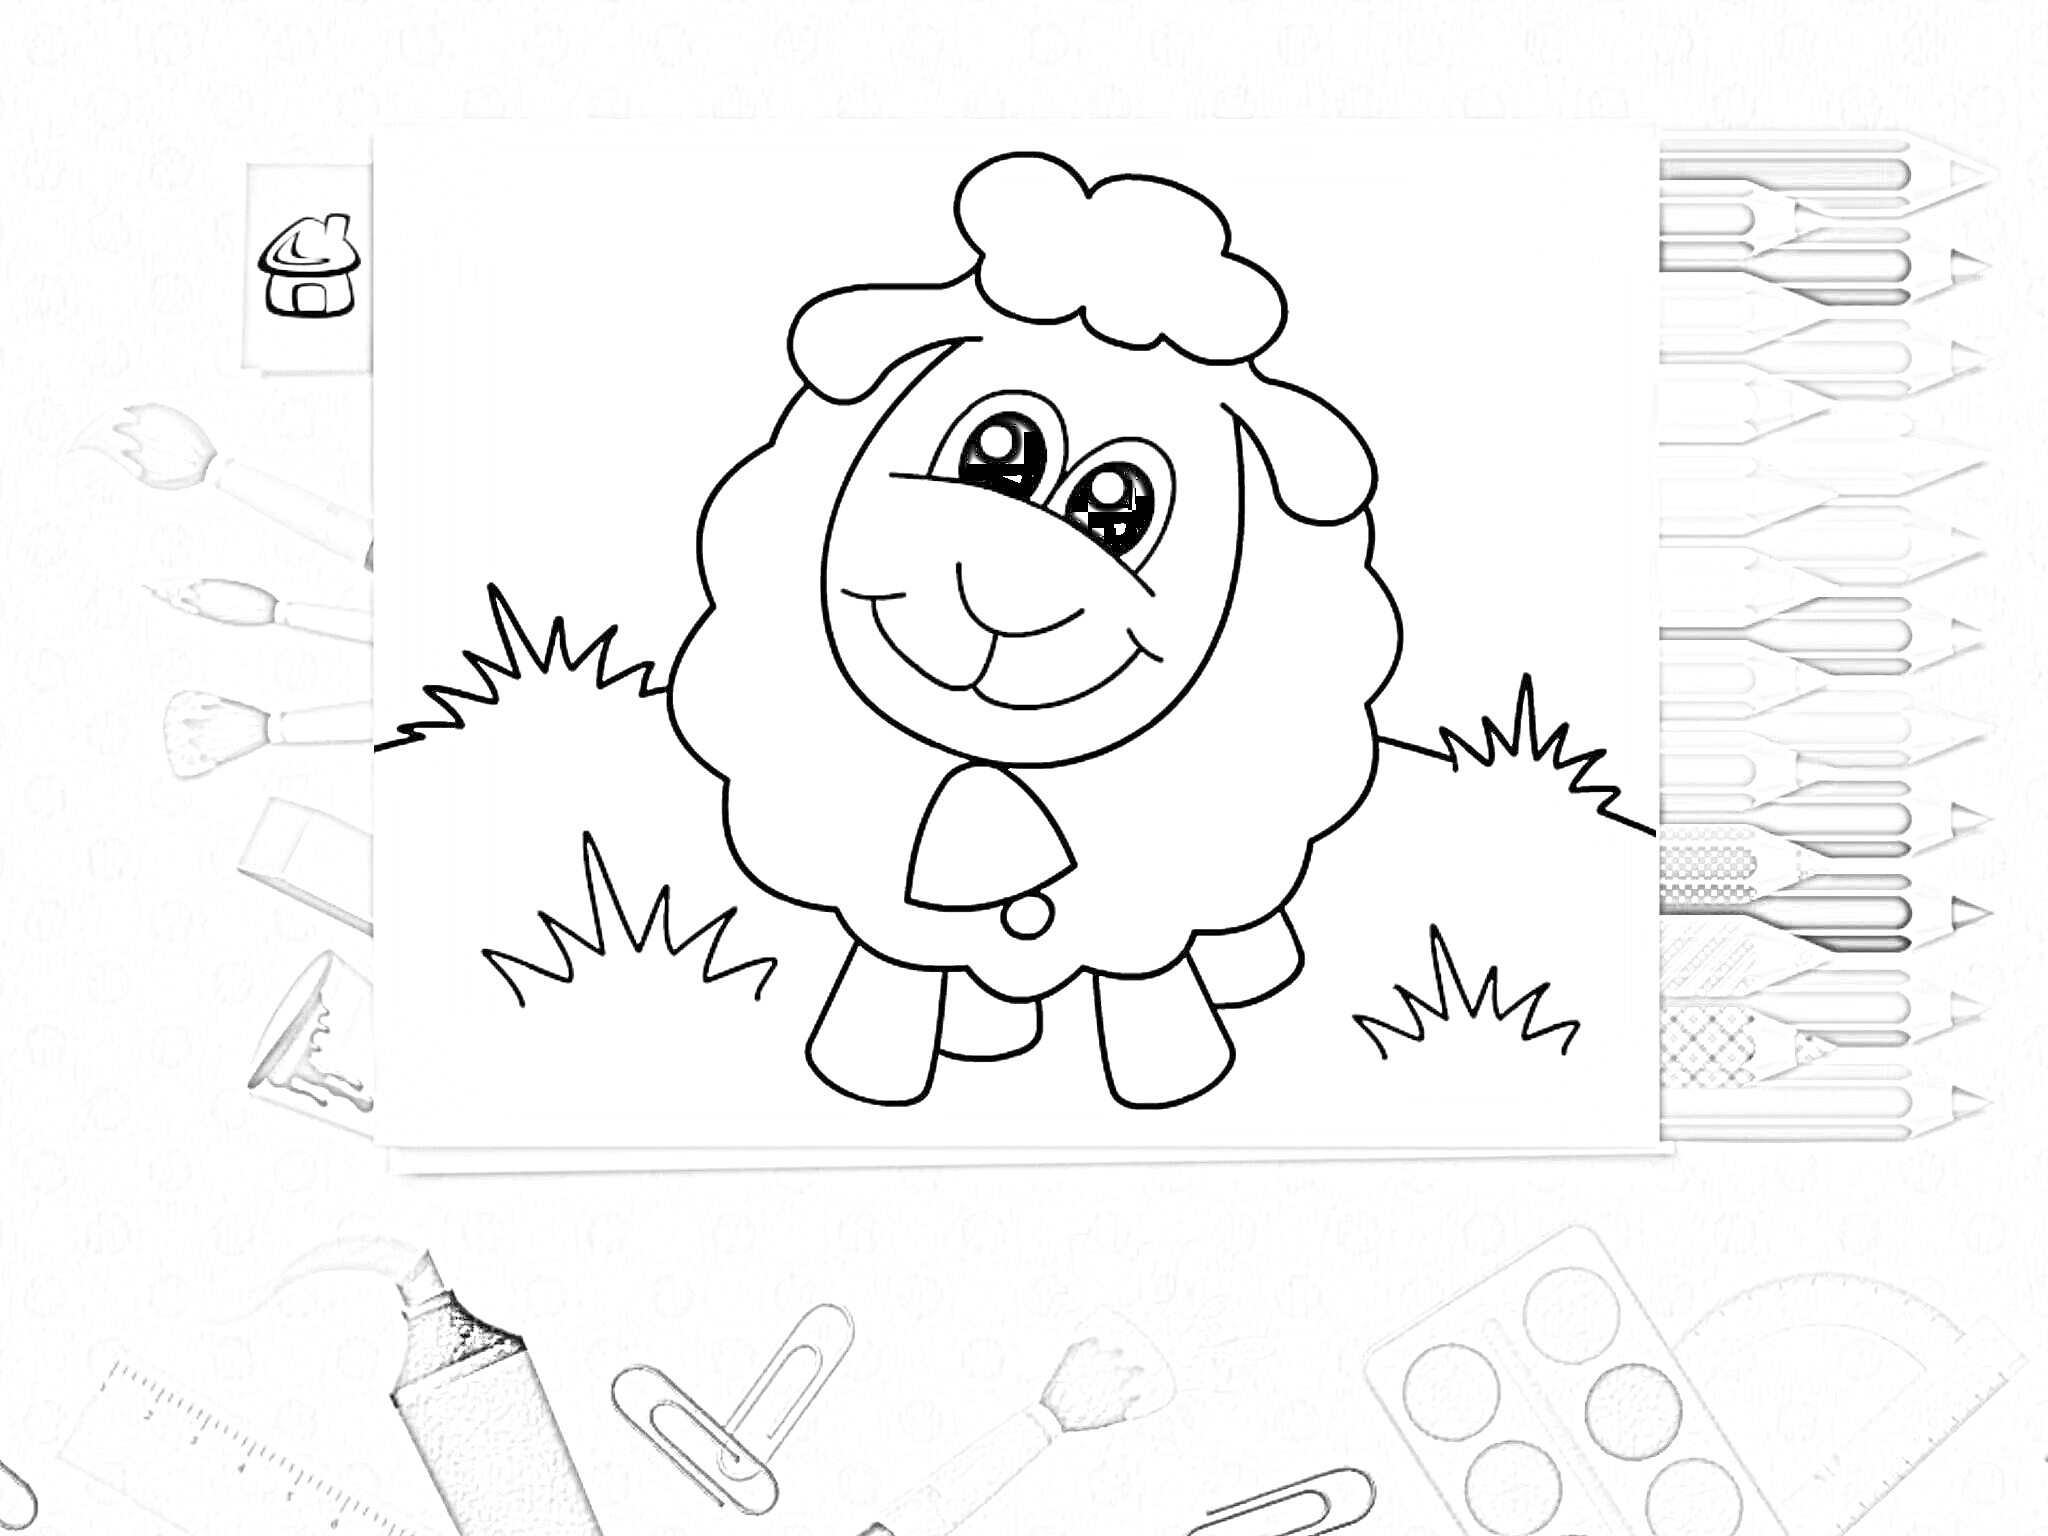 Раскраска с овечкой на лугу с цветными карандашами, ножницами, скрепками, водяными красками и кистью на столе